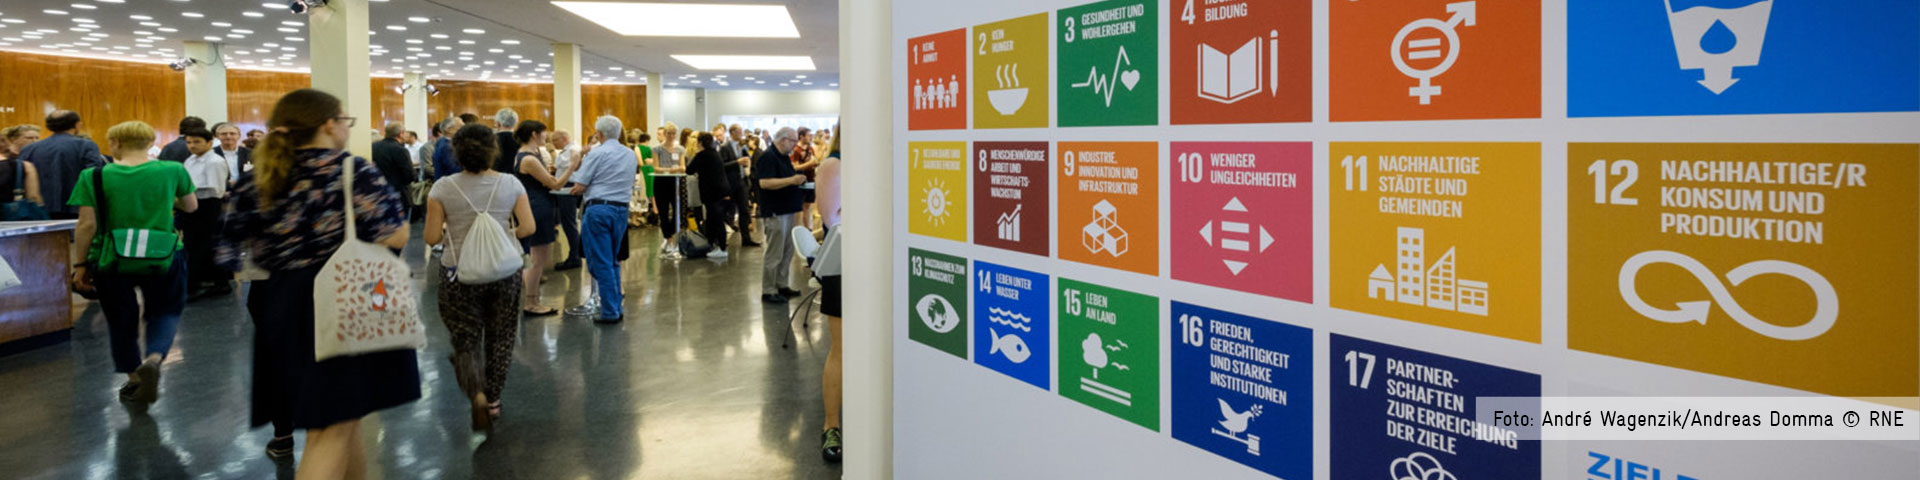 Bei einer Konferenz laufen und stehen Menschen im Eingangsbereich eines Gebäudes. An der Seite ist eine Wand mit den 17 Zielen für nachhaltige Entwicklung zu sehen. Foto: André Wagenzik/Andreas Domma © RNE